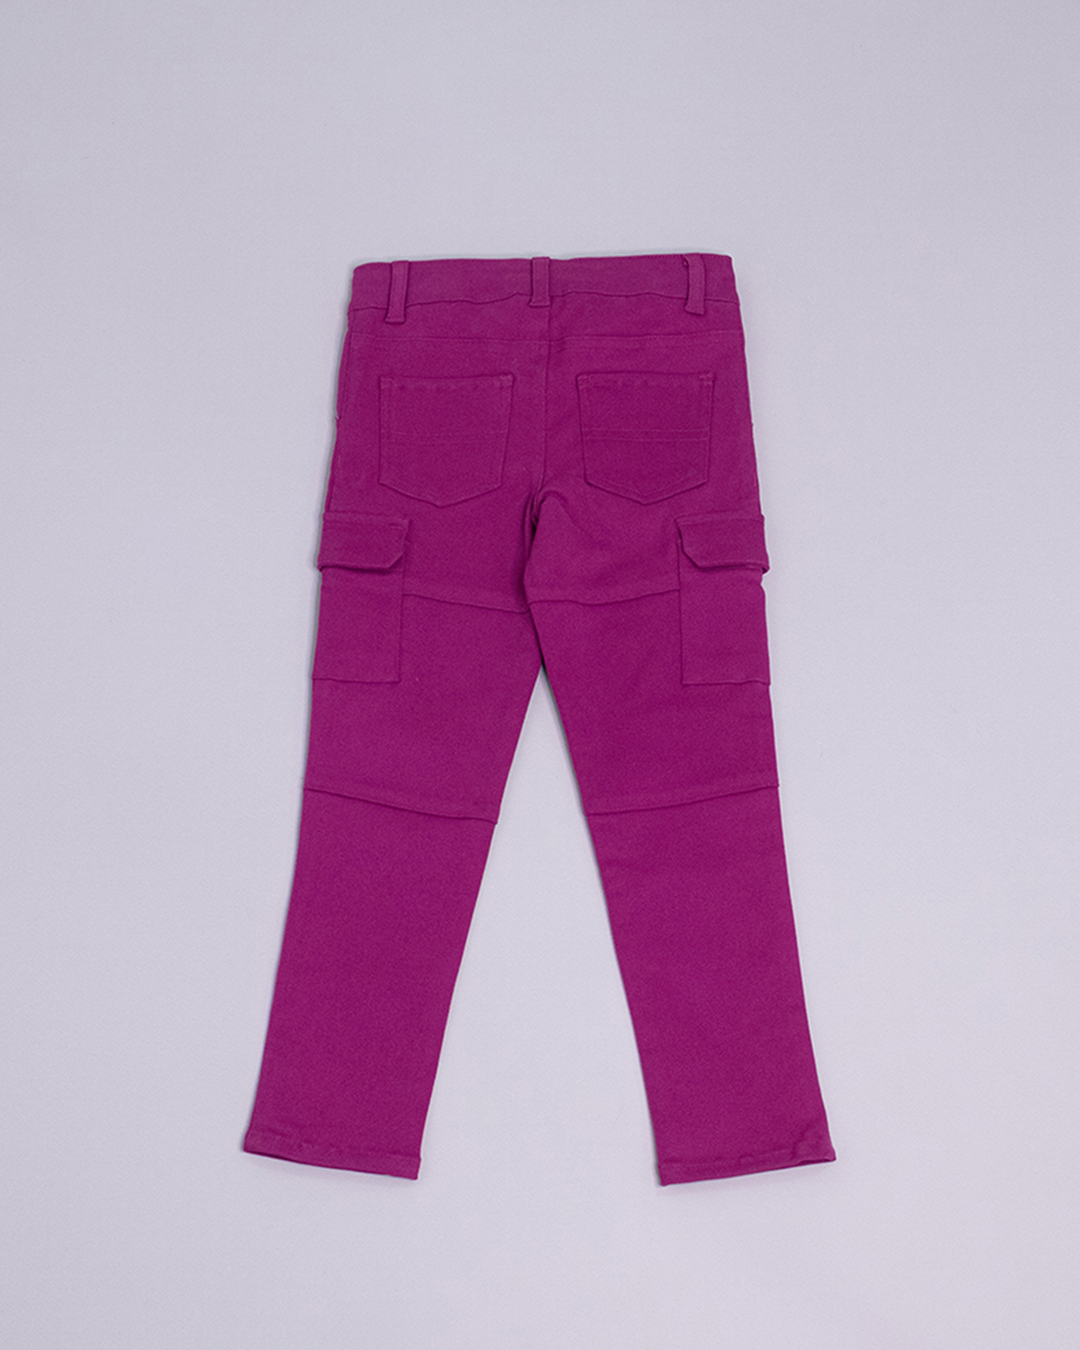 Pantalón cargo de color magenta y bolsillos a los lados